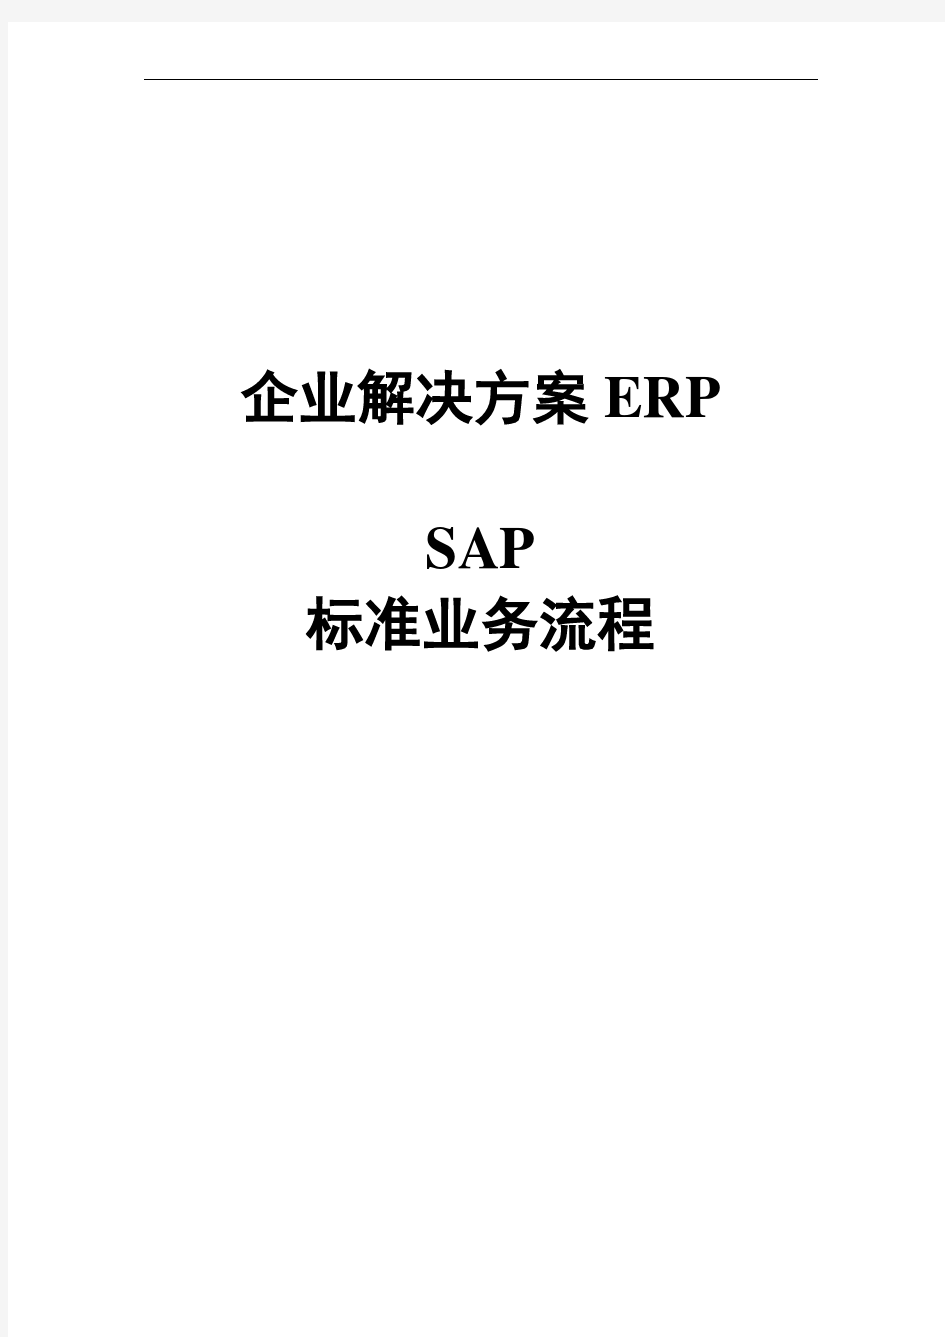 SAP系统业务流程